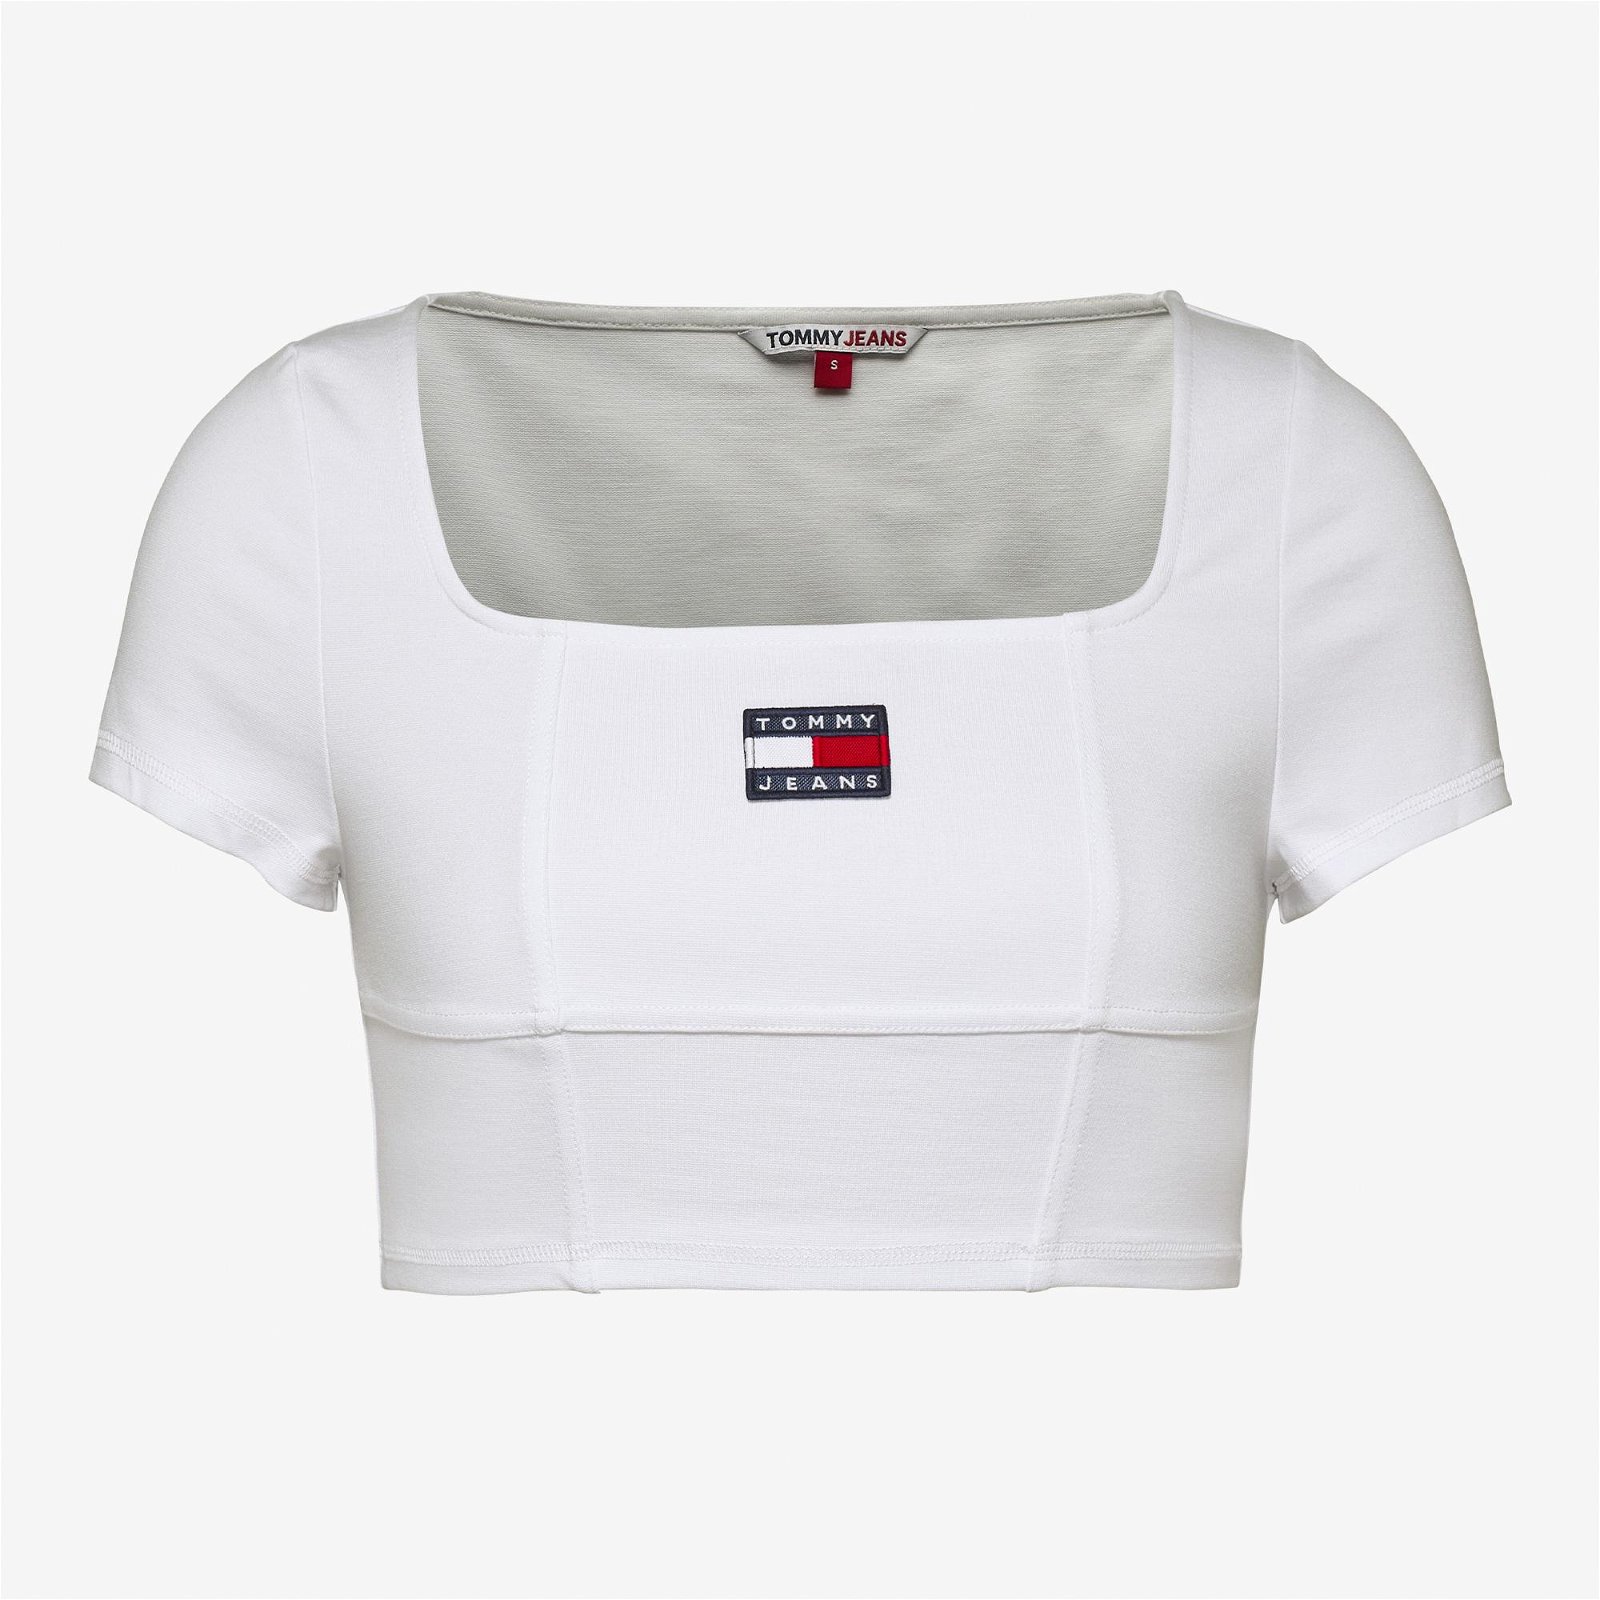 Tommy Jeans Cropped Archive Kadın Beyaz T-Shirt